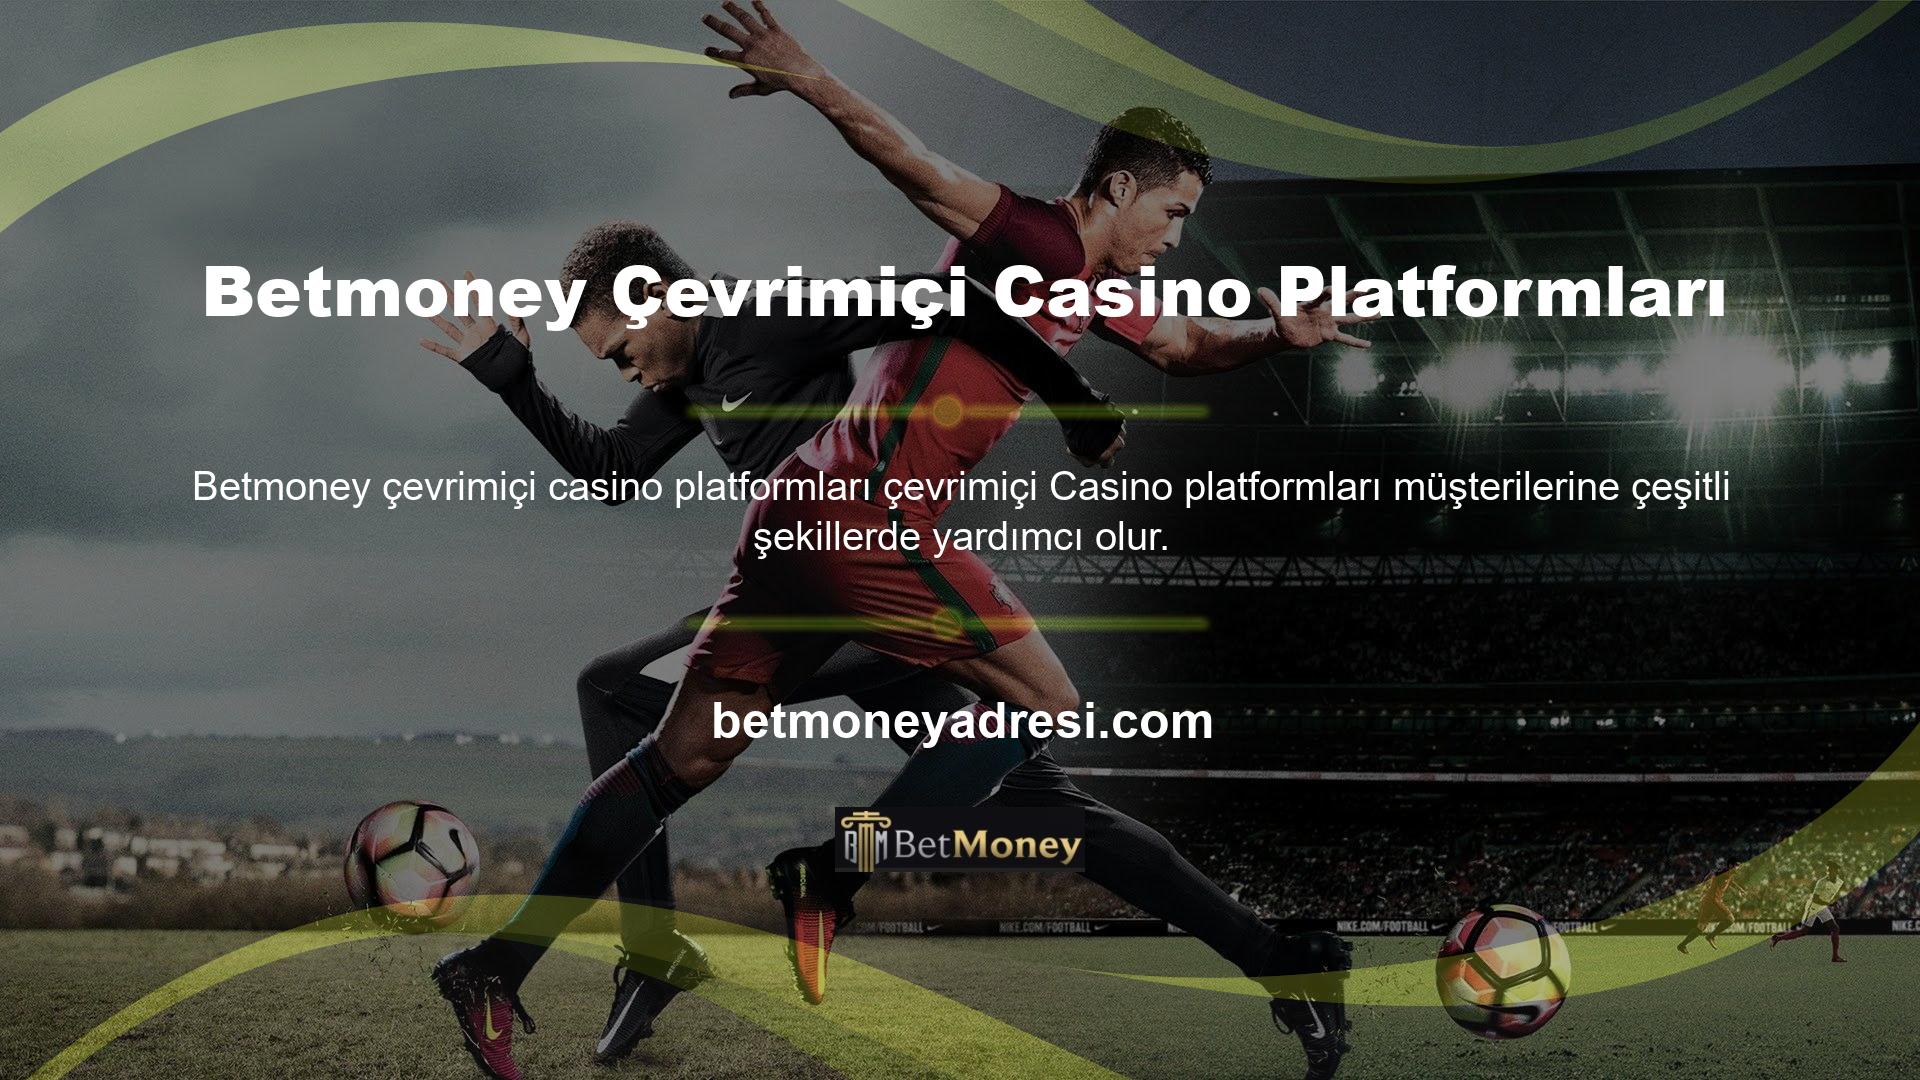 Betmoney, çeşitli zorluklarla başa çıkmanıza veya çeşitli konularda yardım almanıza olanak tanıyan güvenilir bir çevrimiçi Casino platformudur